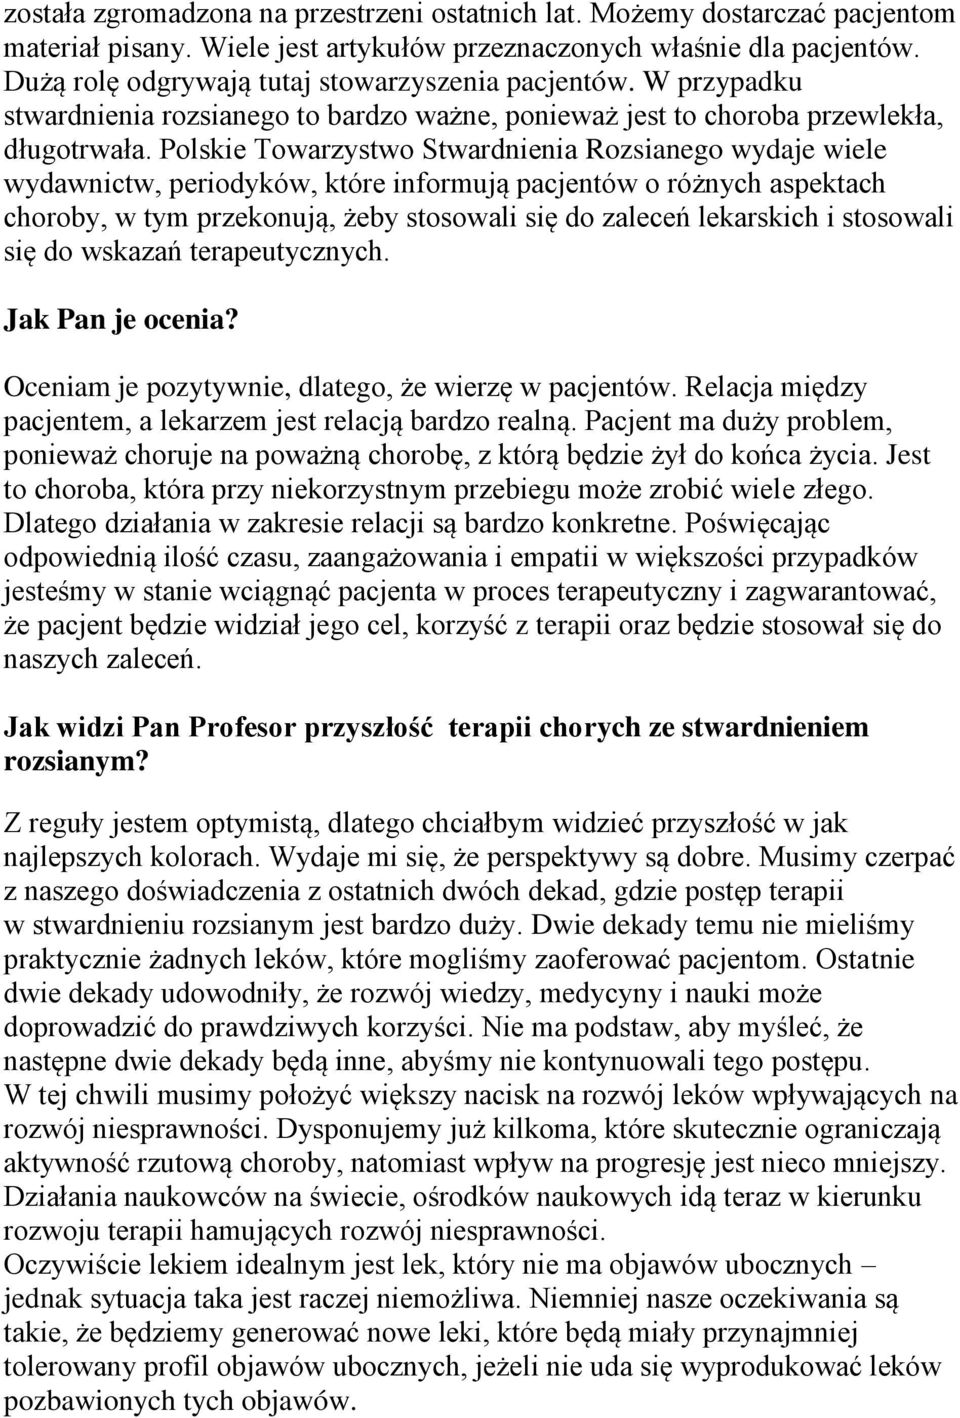 Polskie Towarzystwo Stwardnienia Rozsianego wydaje wiele wydawnictw, periodyków, które informują pacjentów o różnych aspektach choroby, w tym przekonują, żeby stosowali się do zaleceń lekarskich i